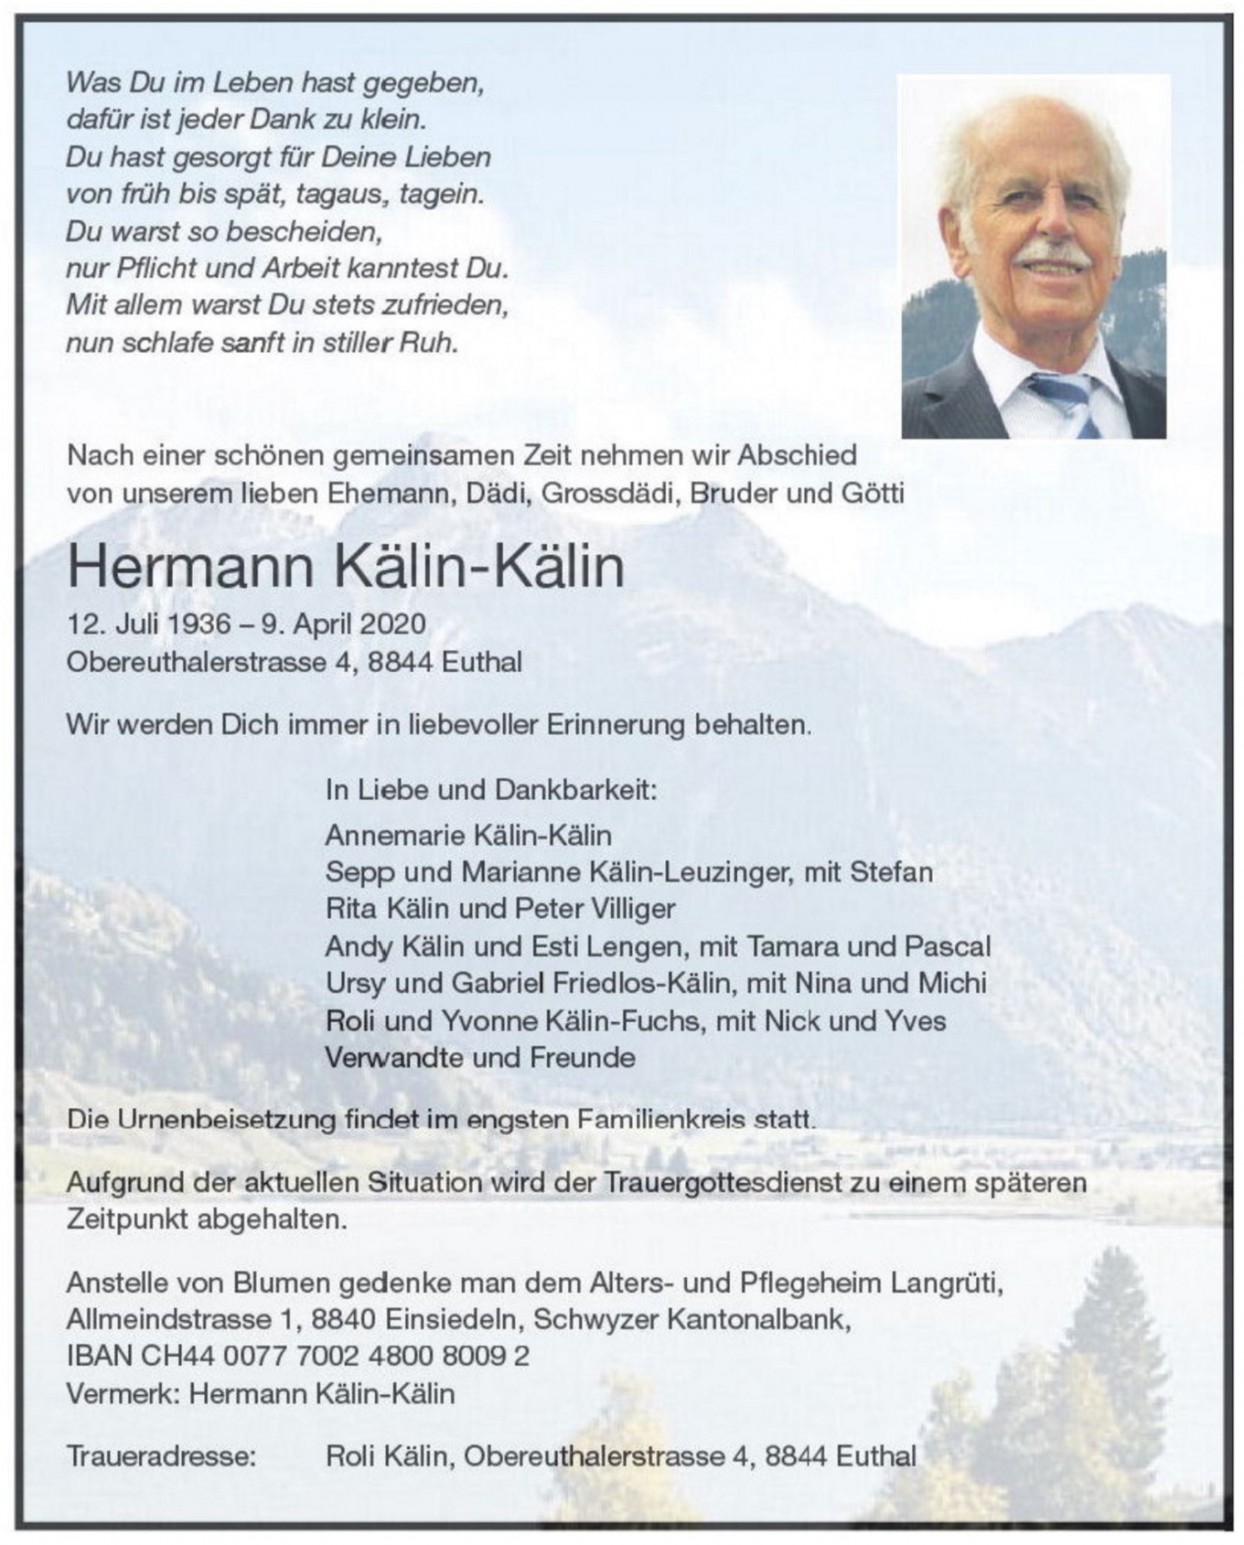 Hermann Kälin-Kälin